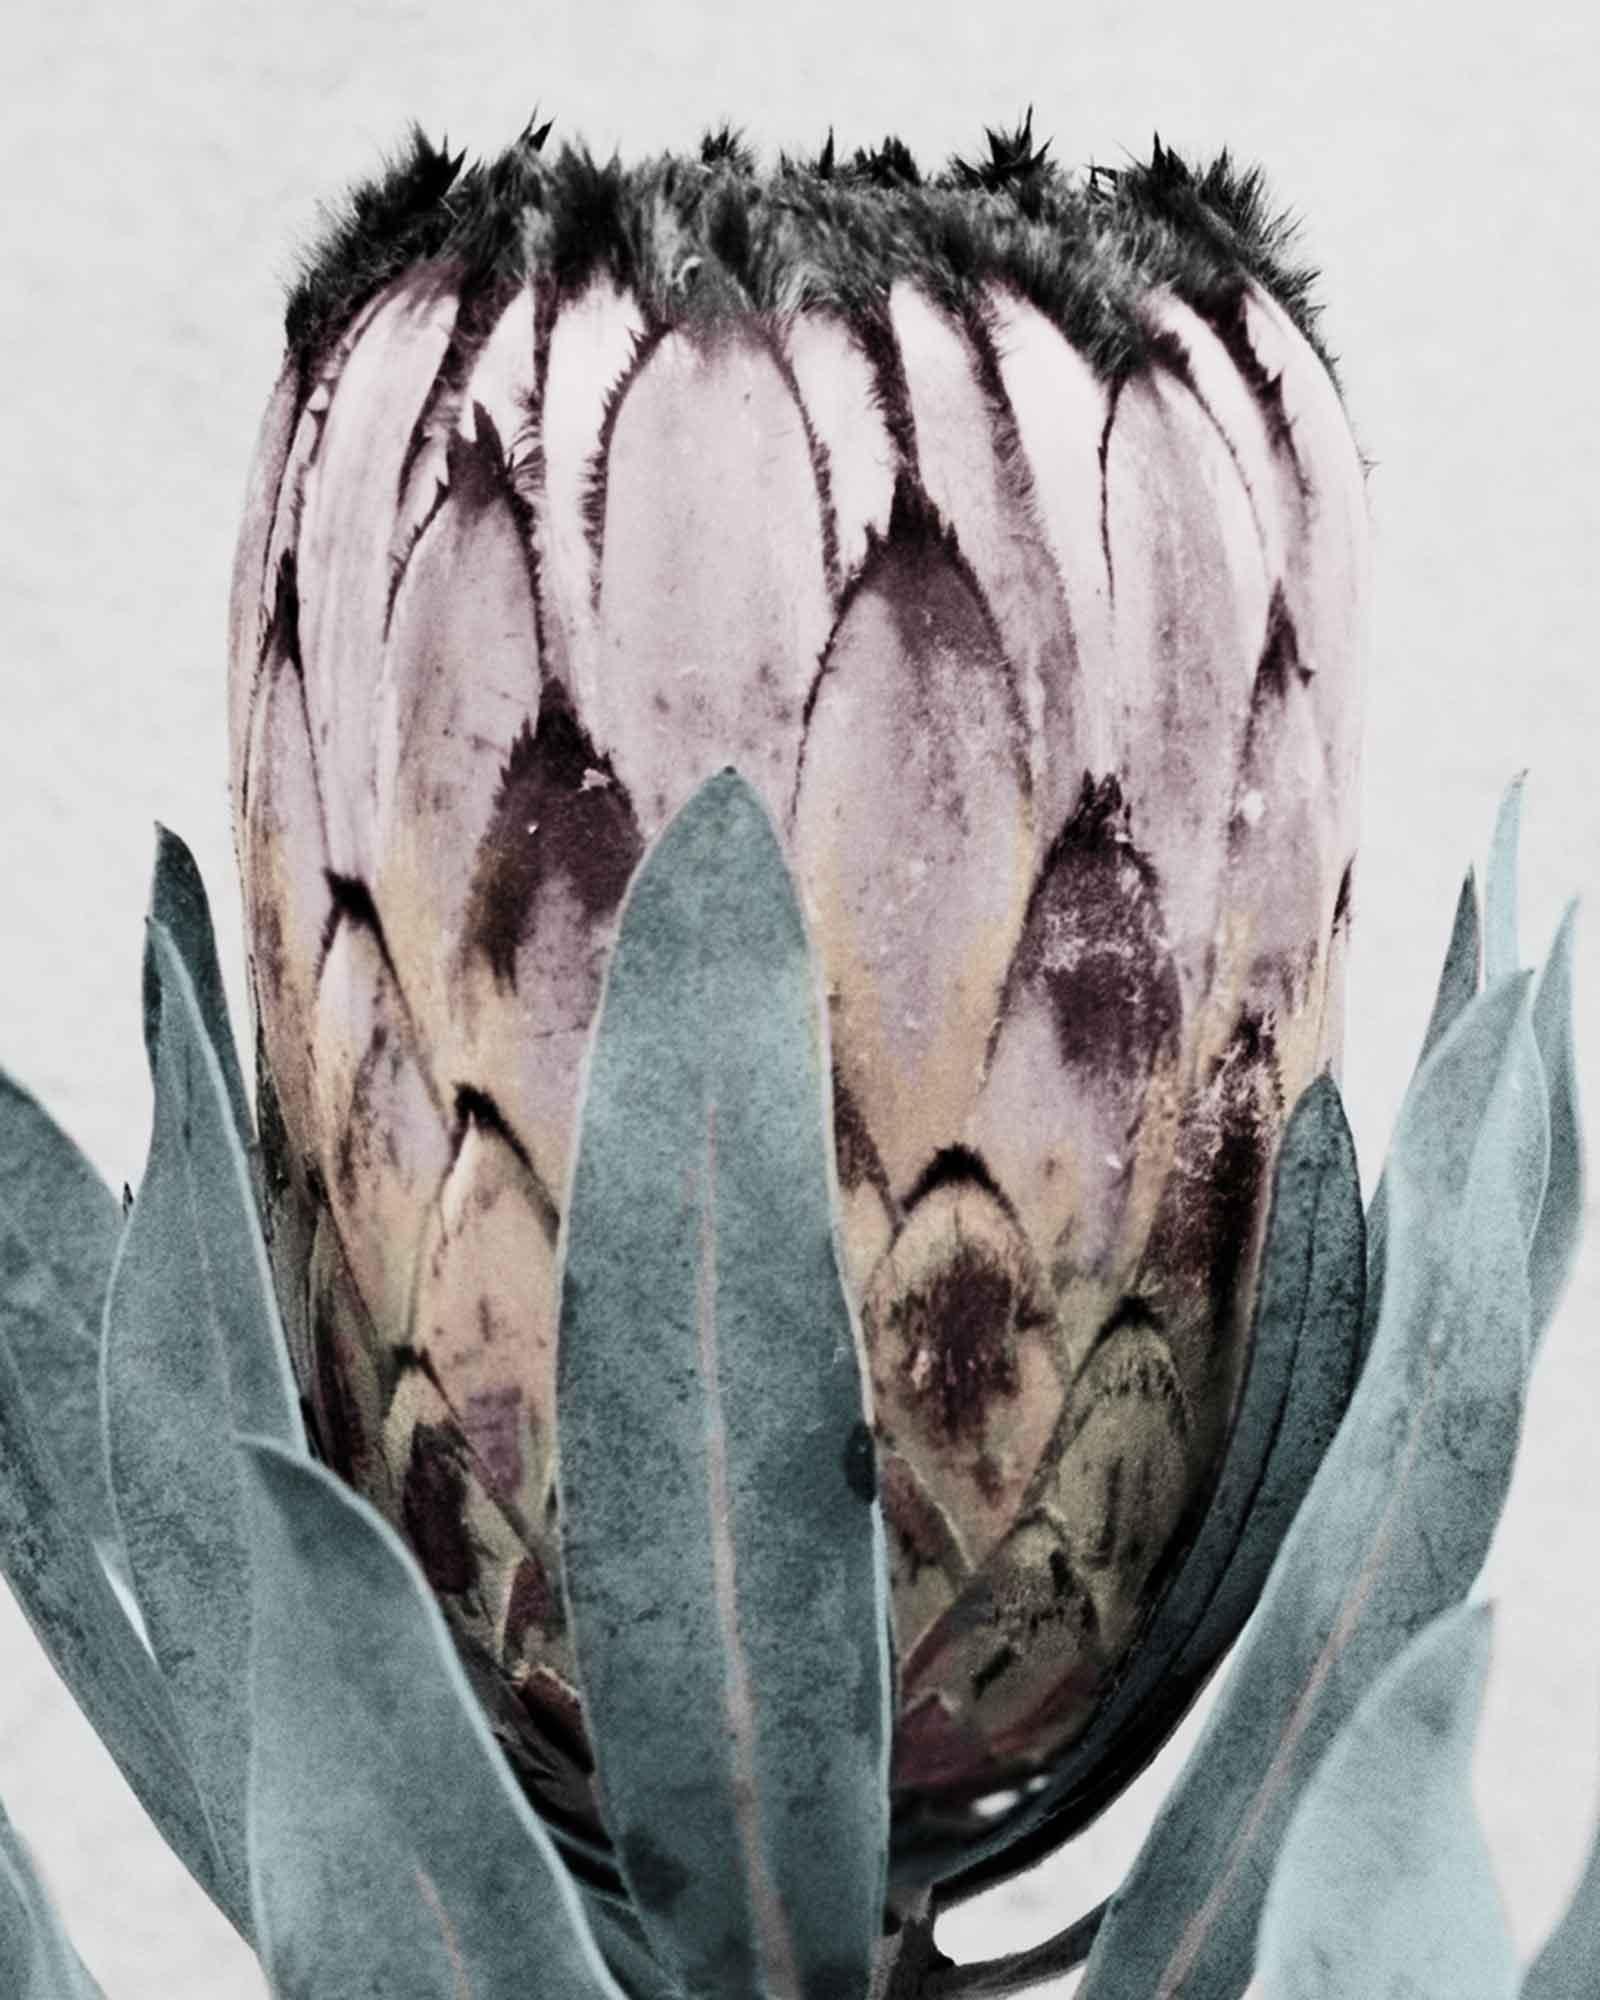 Botanica #17 (Protea Cynaroides) (Zeitgenössisch), Photograph, von Vee Speers